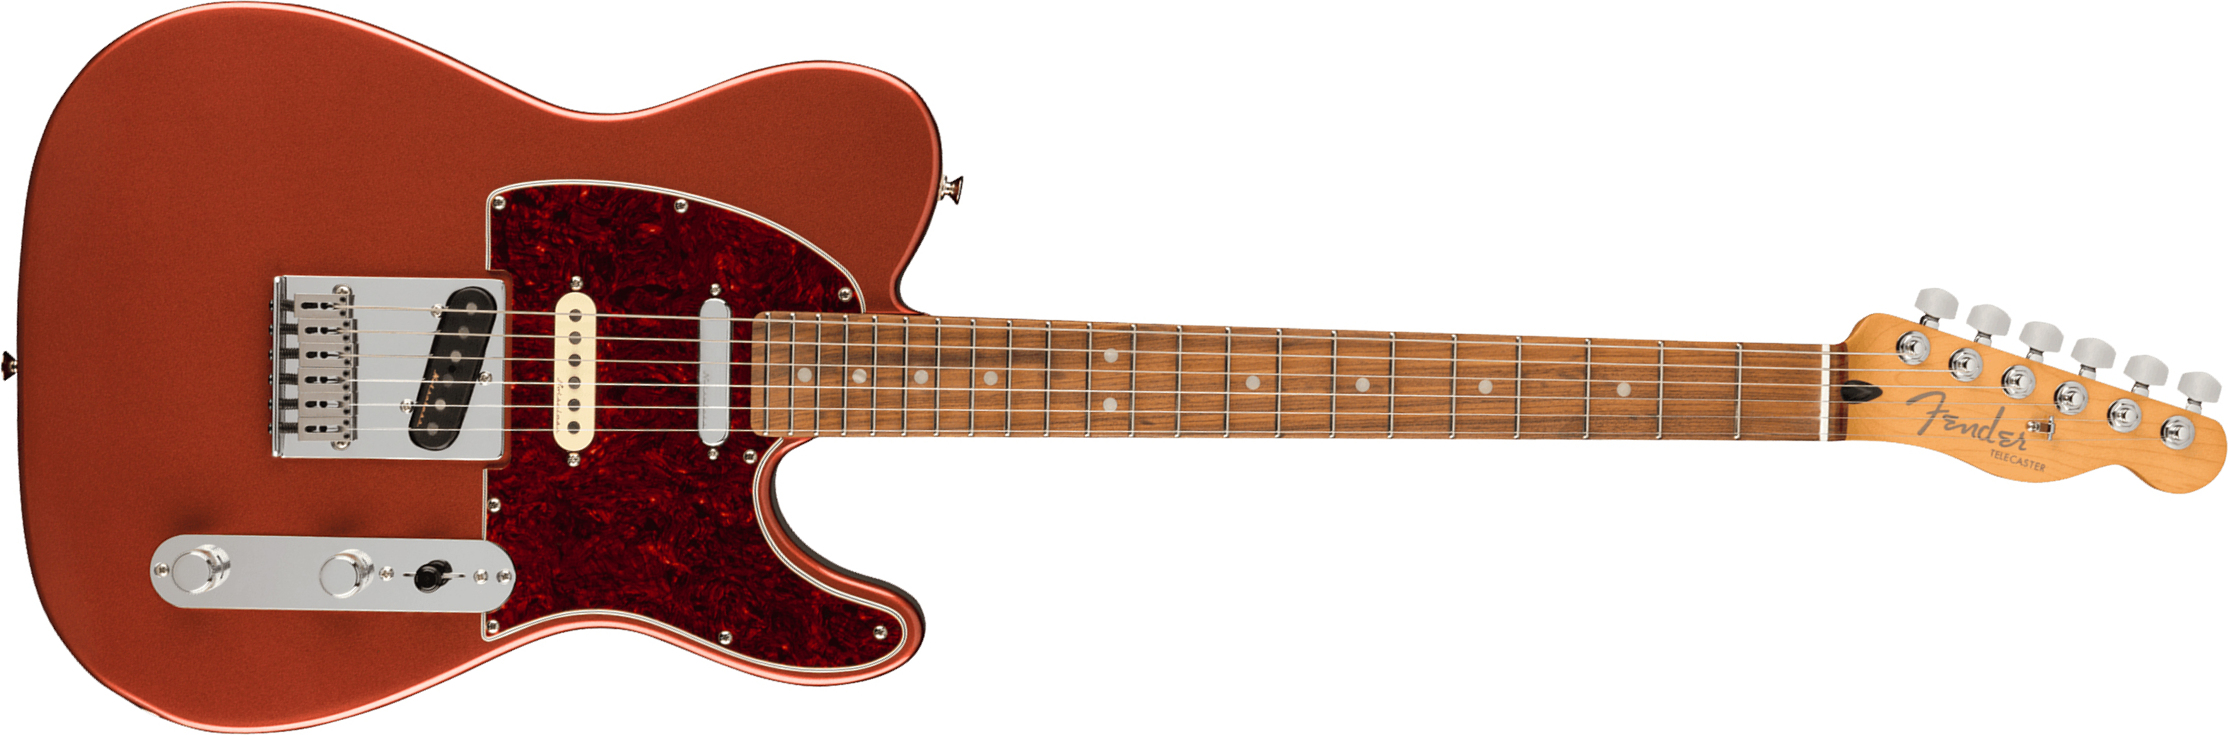 Fender Tele Player Plus Nashville Mex 3s Ht Pf - Aged Candy Apple Red - Guitare Électrique Forme Tel - Main picture